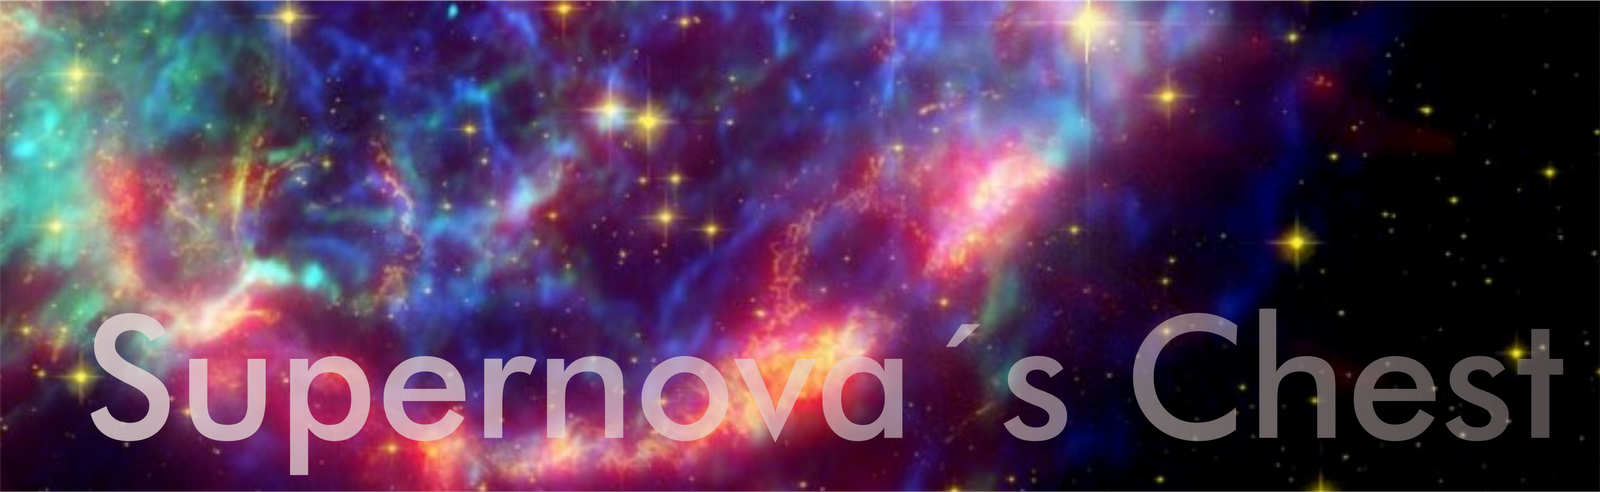 Supernova's Chest